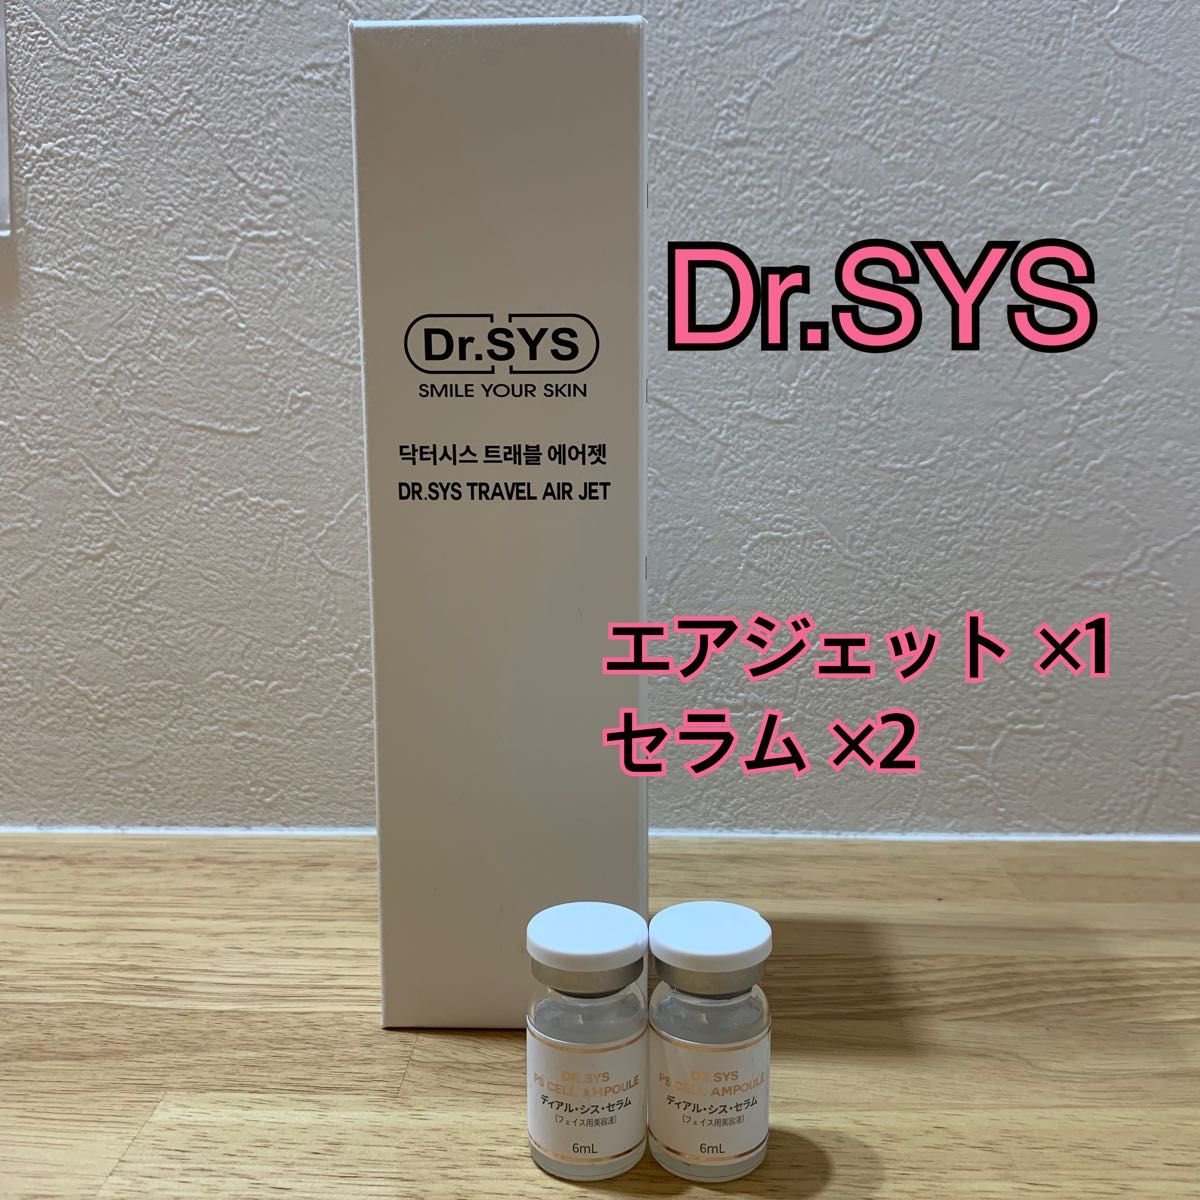 ドクターシス 植物幹細胞+エクソソーム+美容成分 スペシャルセラム Dr